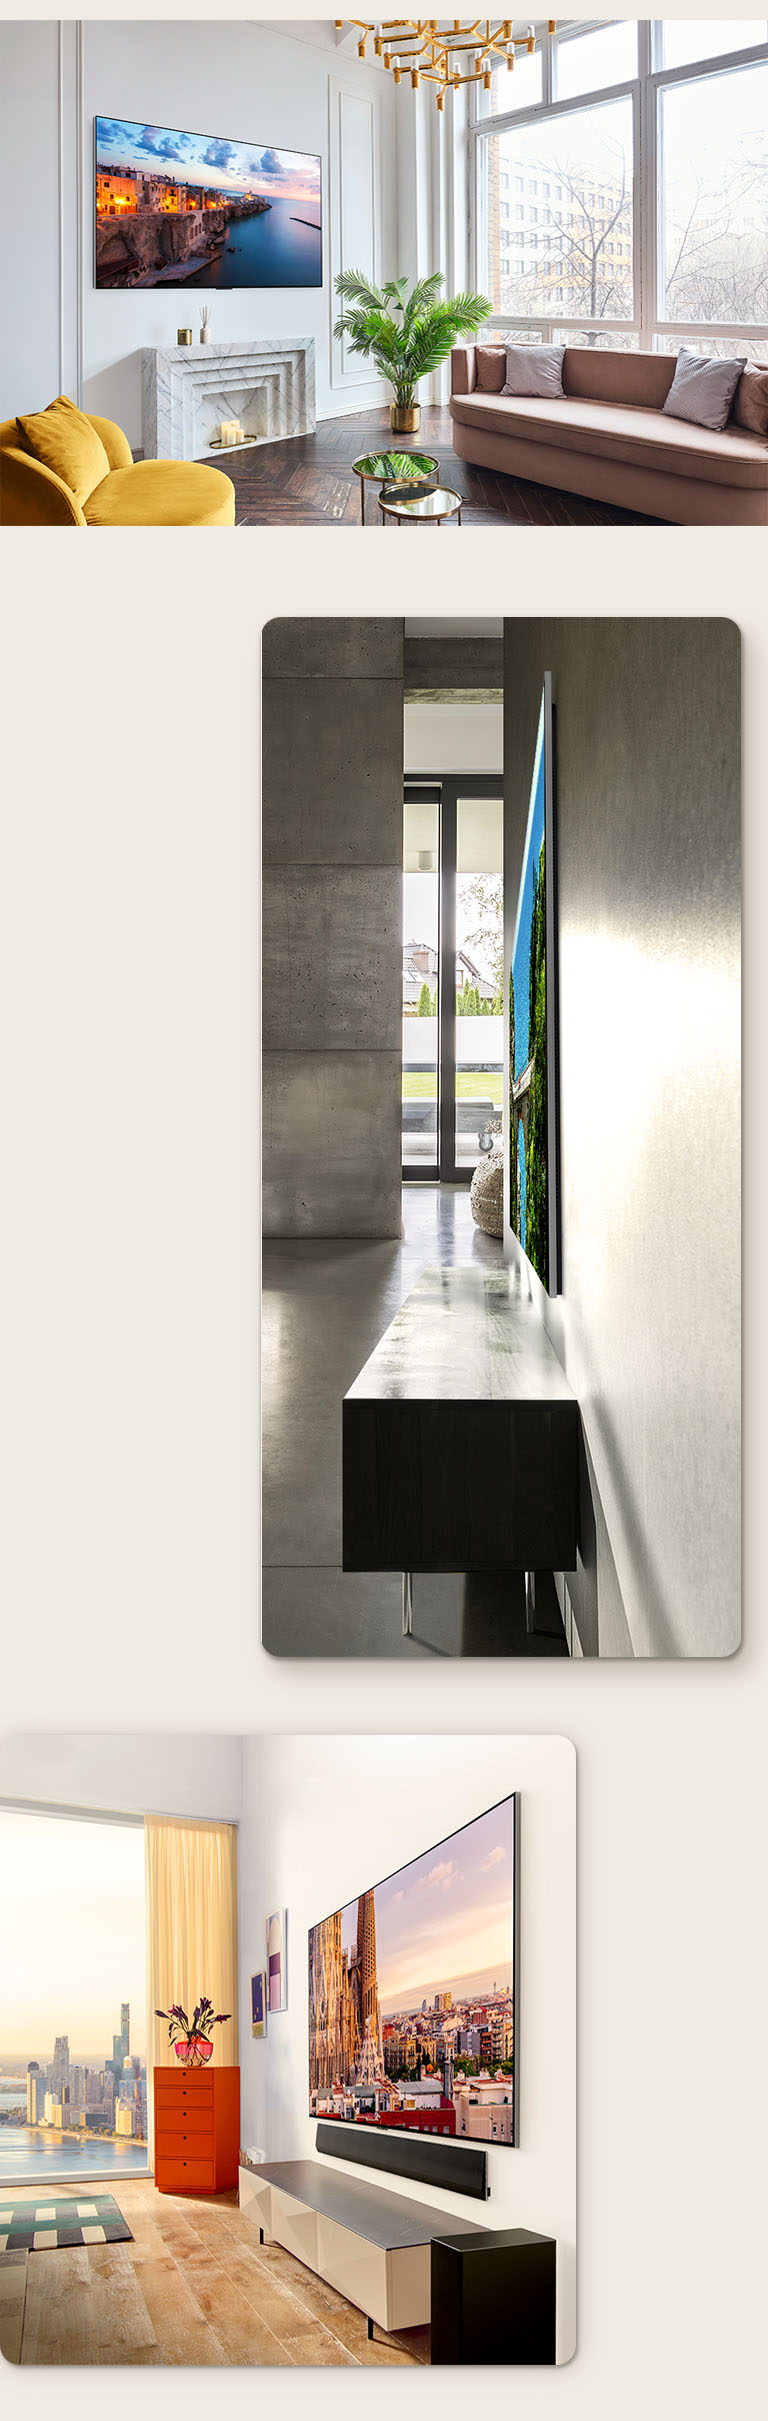 Изображение LG OLED G3 на стене богато украшенной комнаты, демонстрирующее дизайн One Wall.  Невероятно тонкий LG OLED G3, вид сбоку.  Угловой вид LG OLED G3 на стене квартиры с видом на город и звуковой панелью внизу.